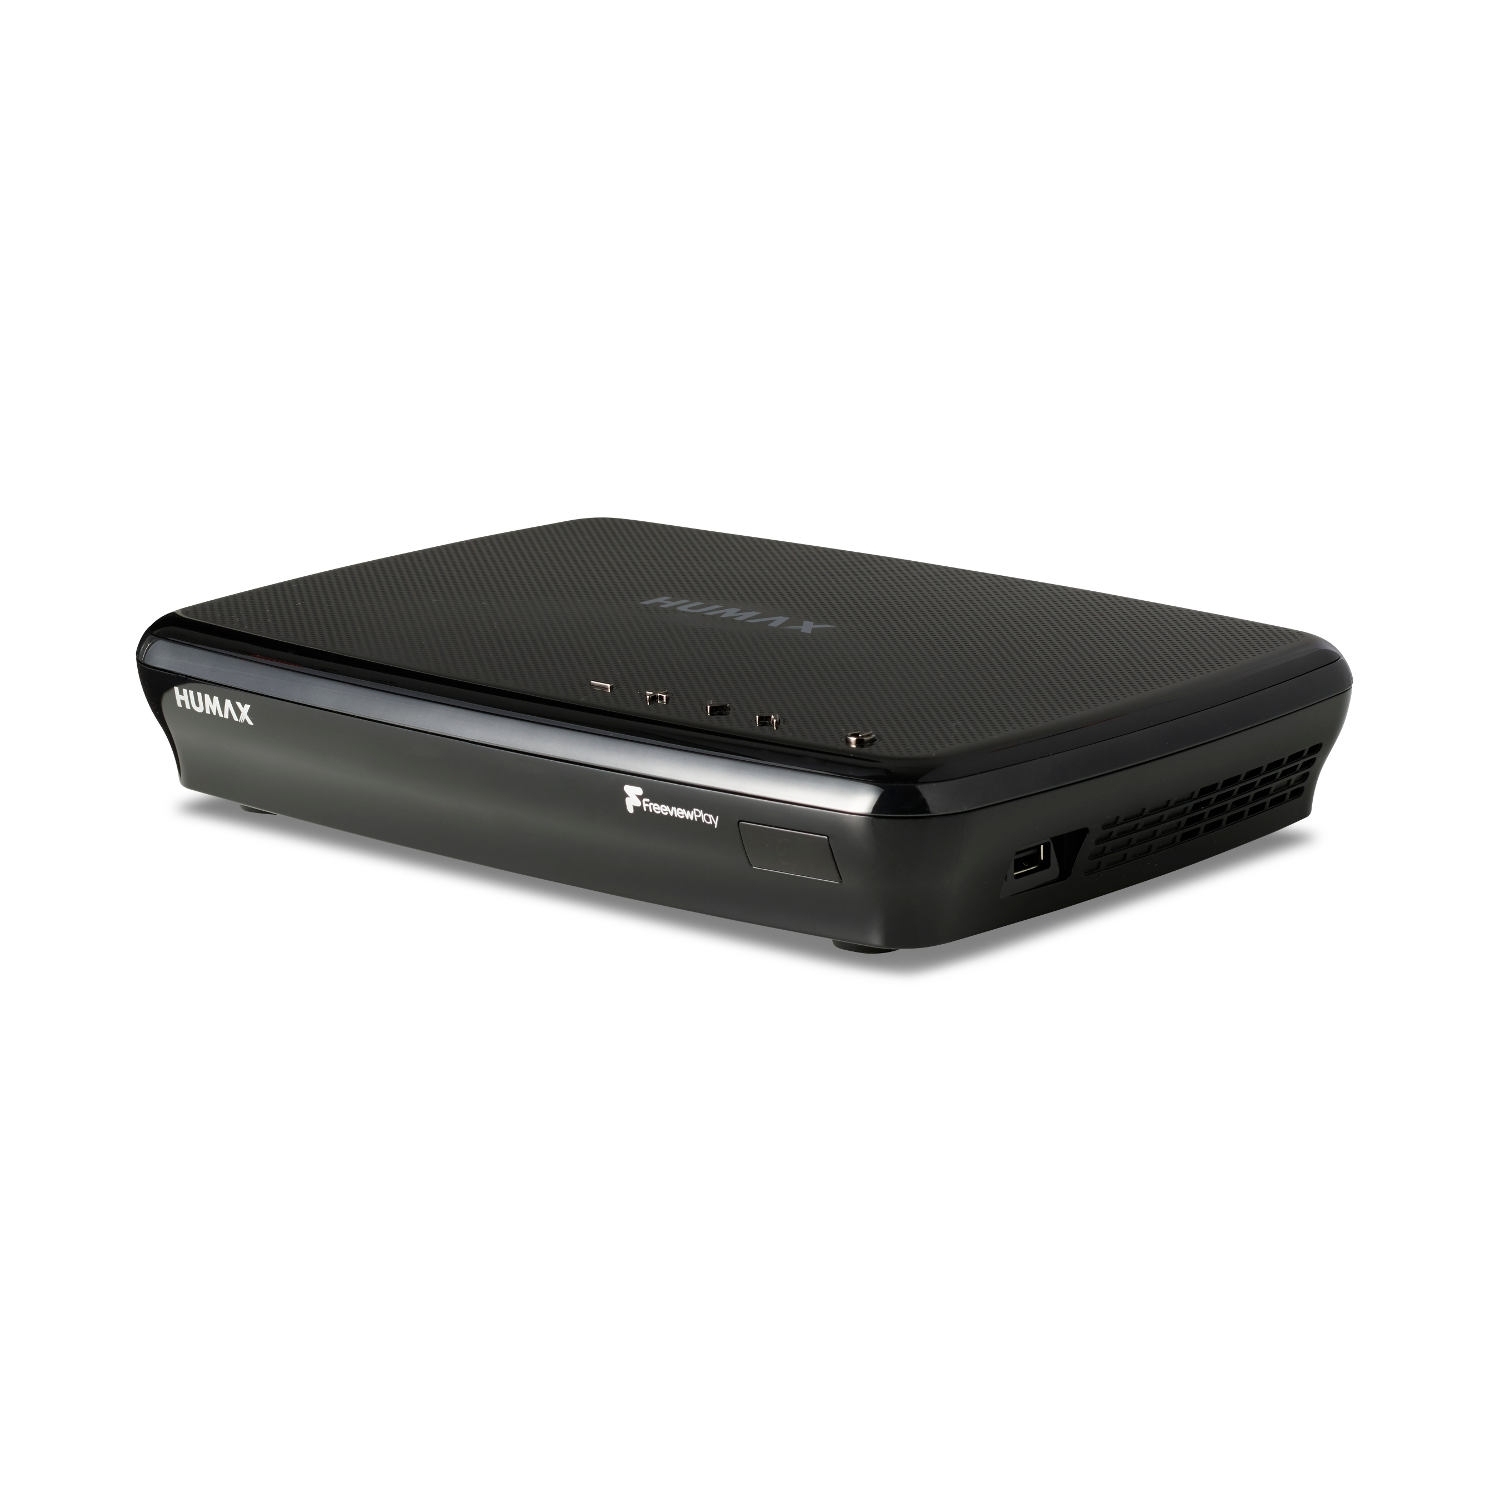 Humax FVP5000T 1TB Digital Video Recorder - 1 TB HDD-Freeview-HD-Smart- Black - 3